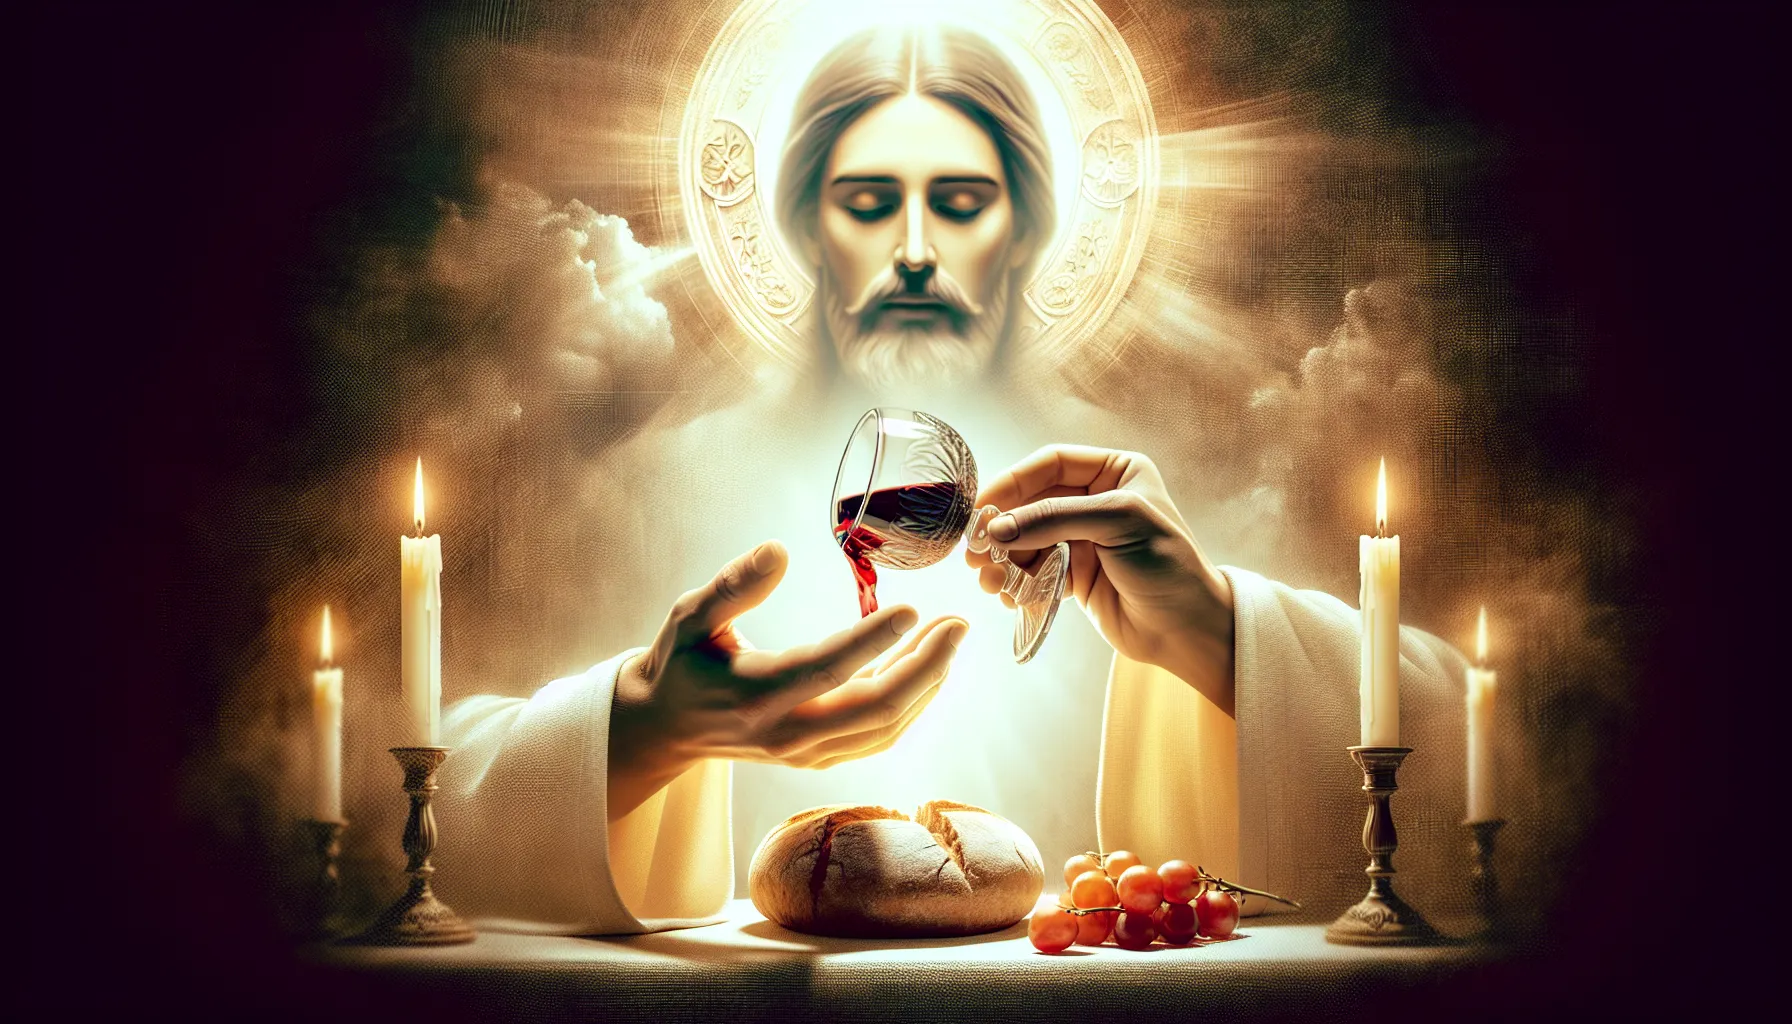 La transustanciación representa la transformación del pan y el vino en el cuerpo y la sangre de Cristo durante la Eucaristía